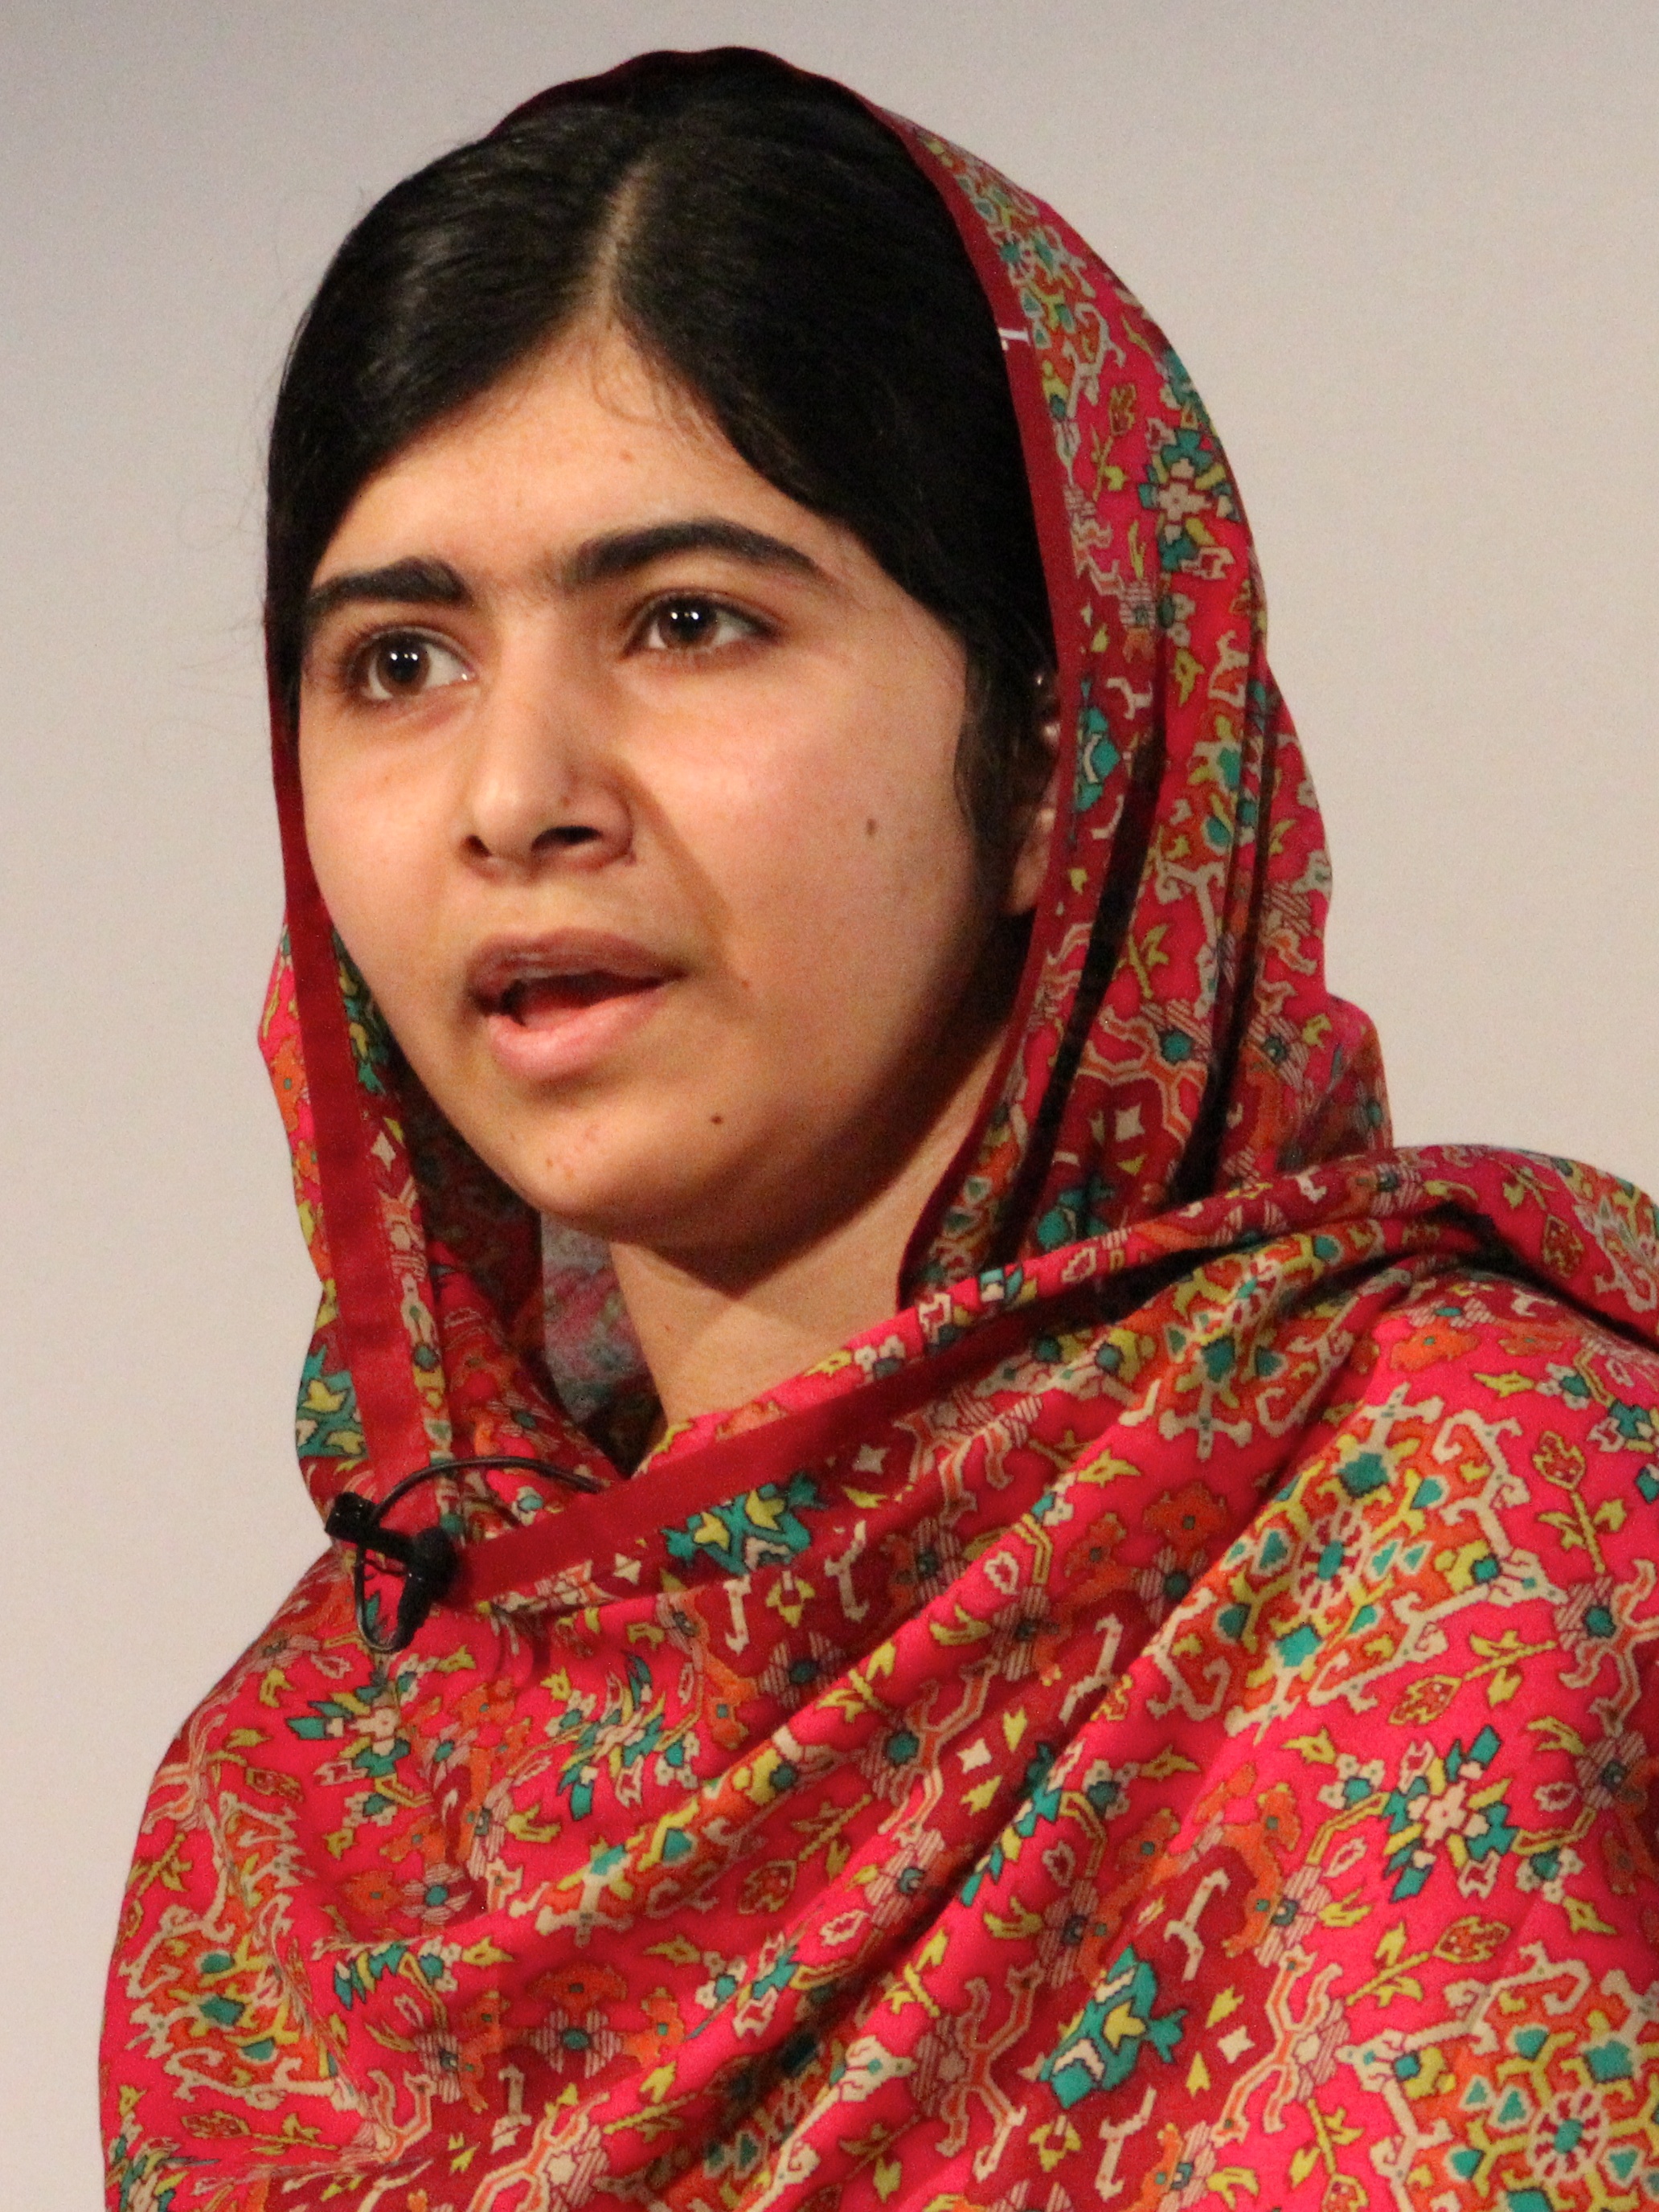 http://upload.wikimedia.org/wikipedia/commons/8/89/Malala_Yousafzai_at_Girl_Summit_2014.jpg